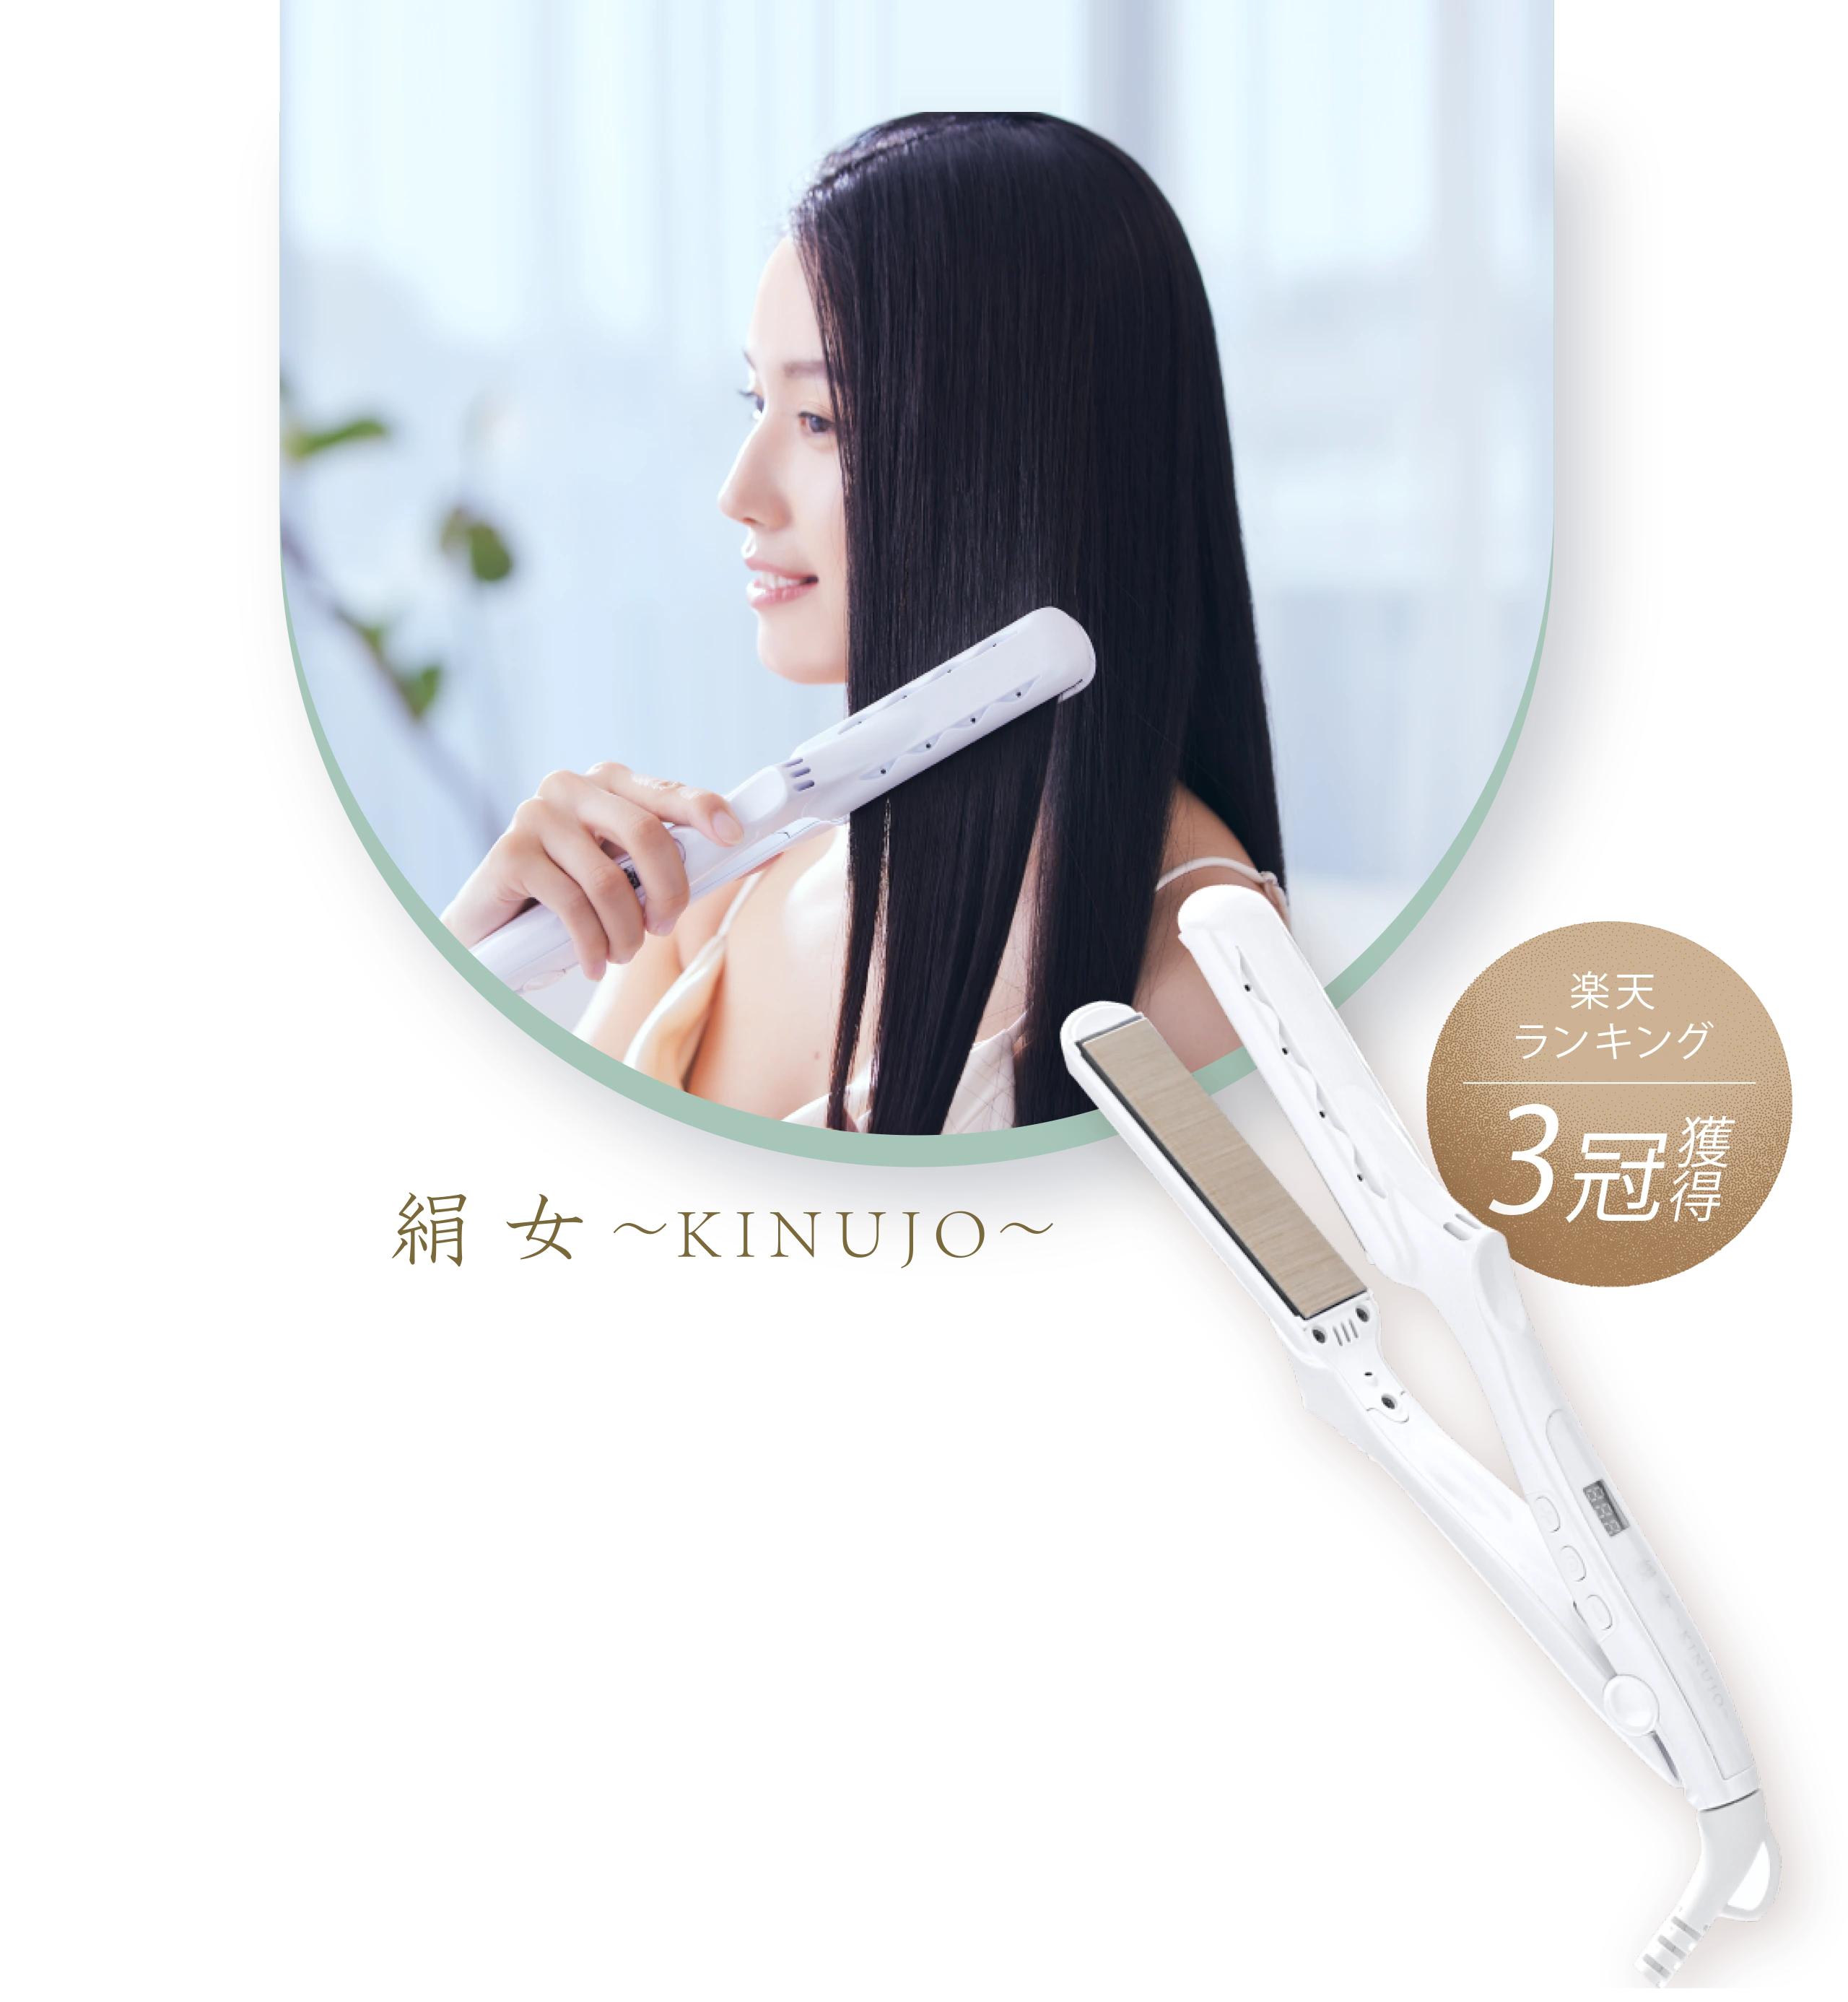 DS100JANコード【新品未使用】絹女 キヌージョ ストレートヘアアイロン LM-125 ホワイト